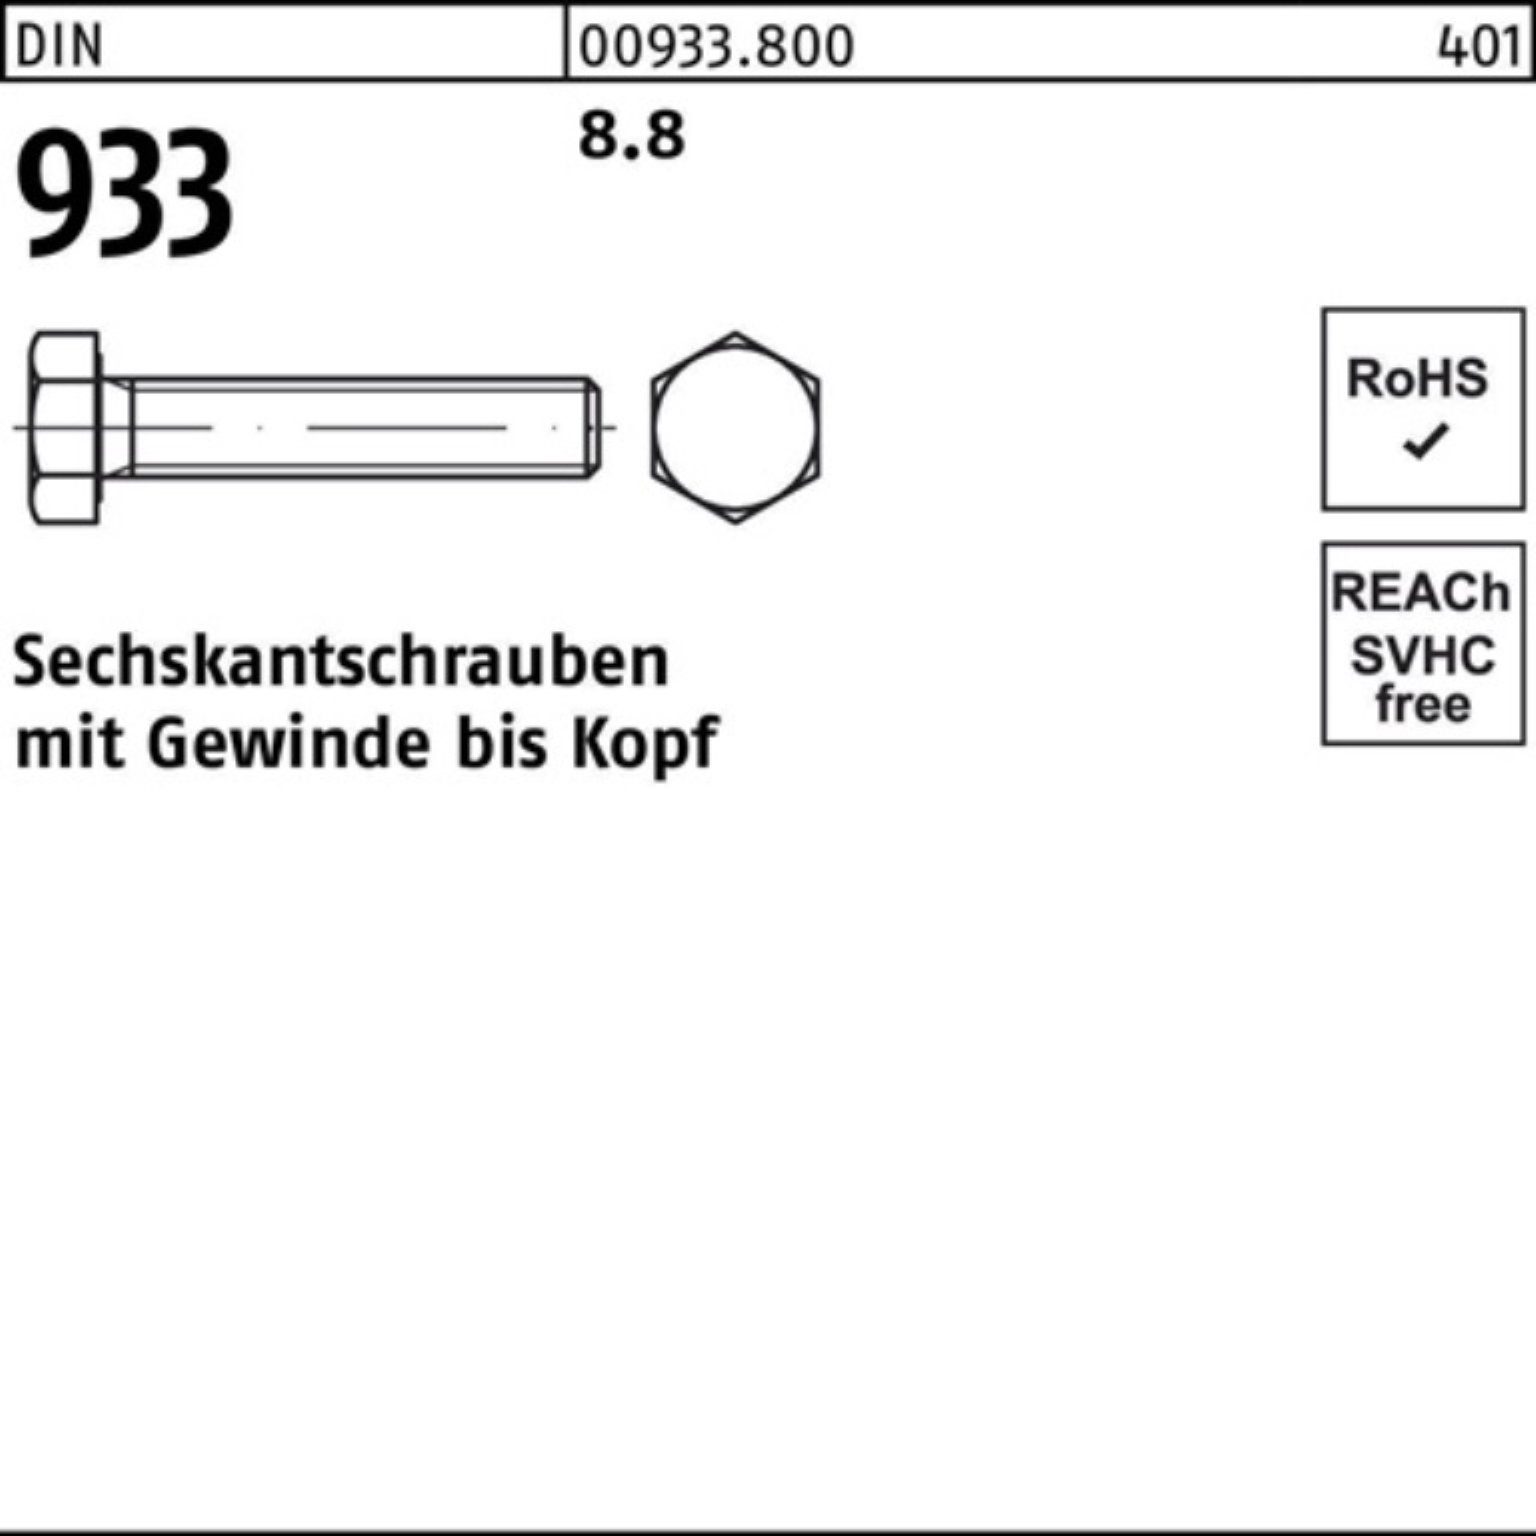 100er Reyher 180 M42x Sechskantschraube DIN VG DIN Pack 933 Stück Sechskantschraube 933 8.8 1